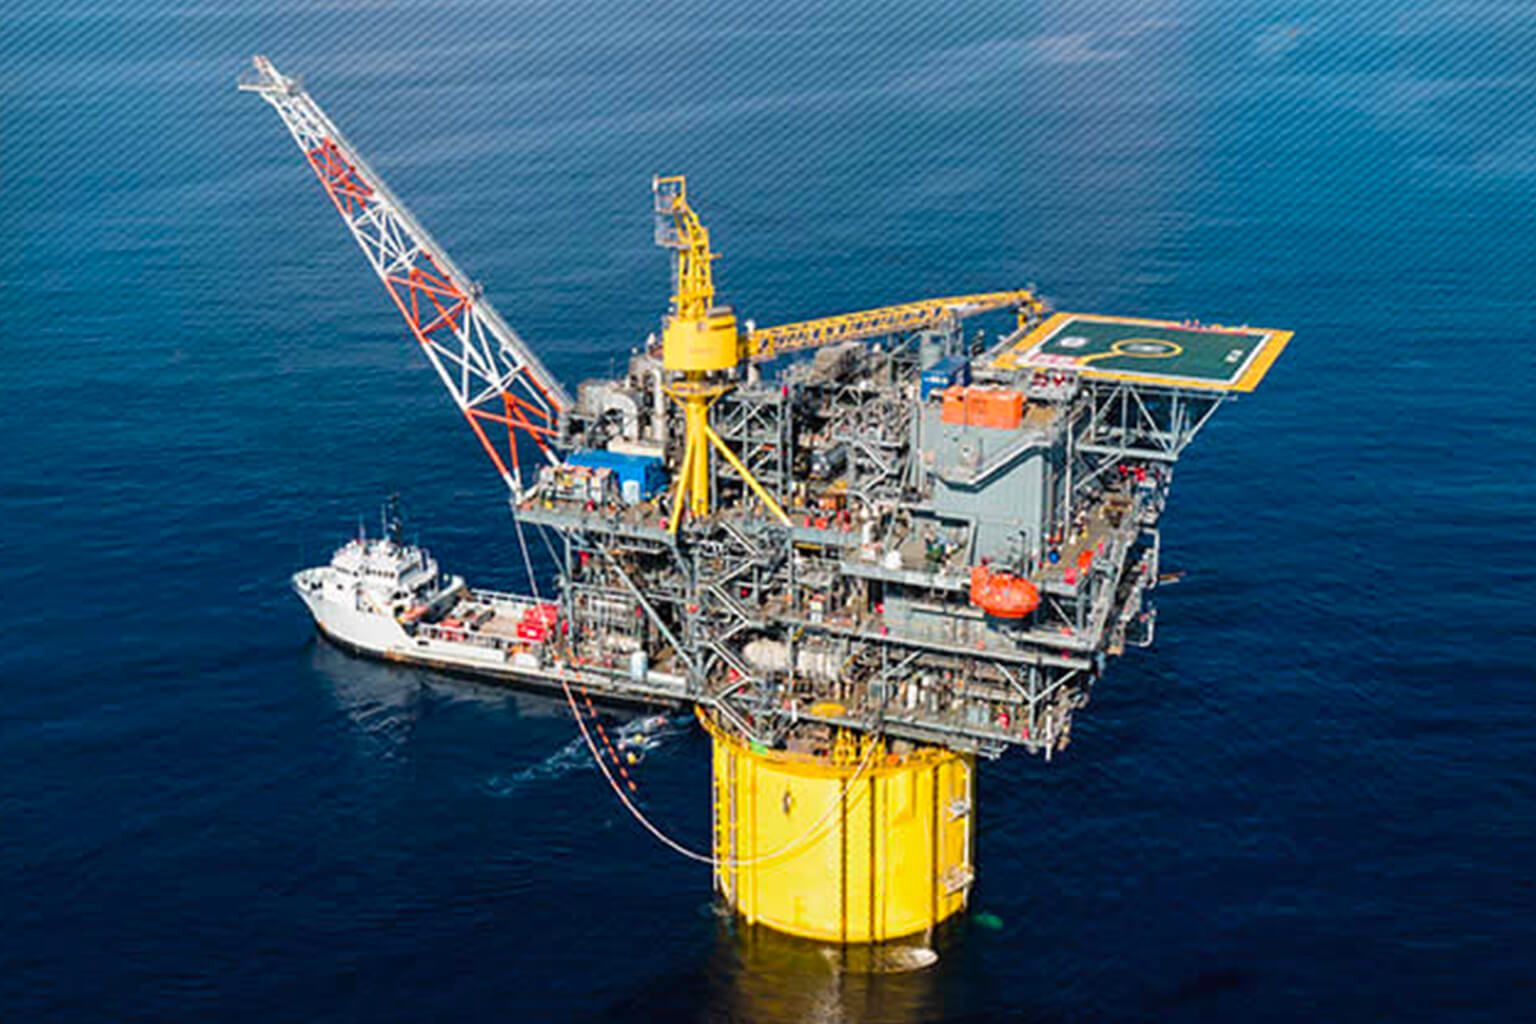 Hess Deep Sea Oil Rig